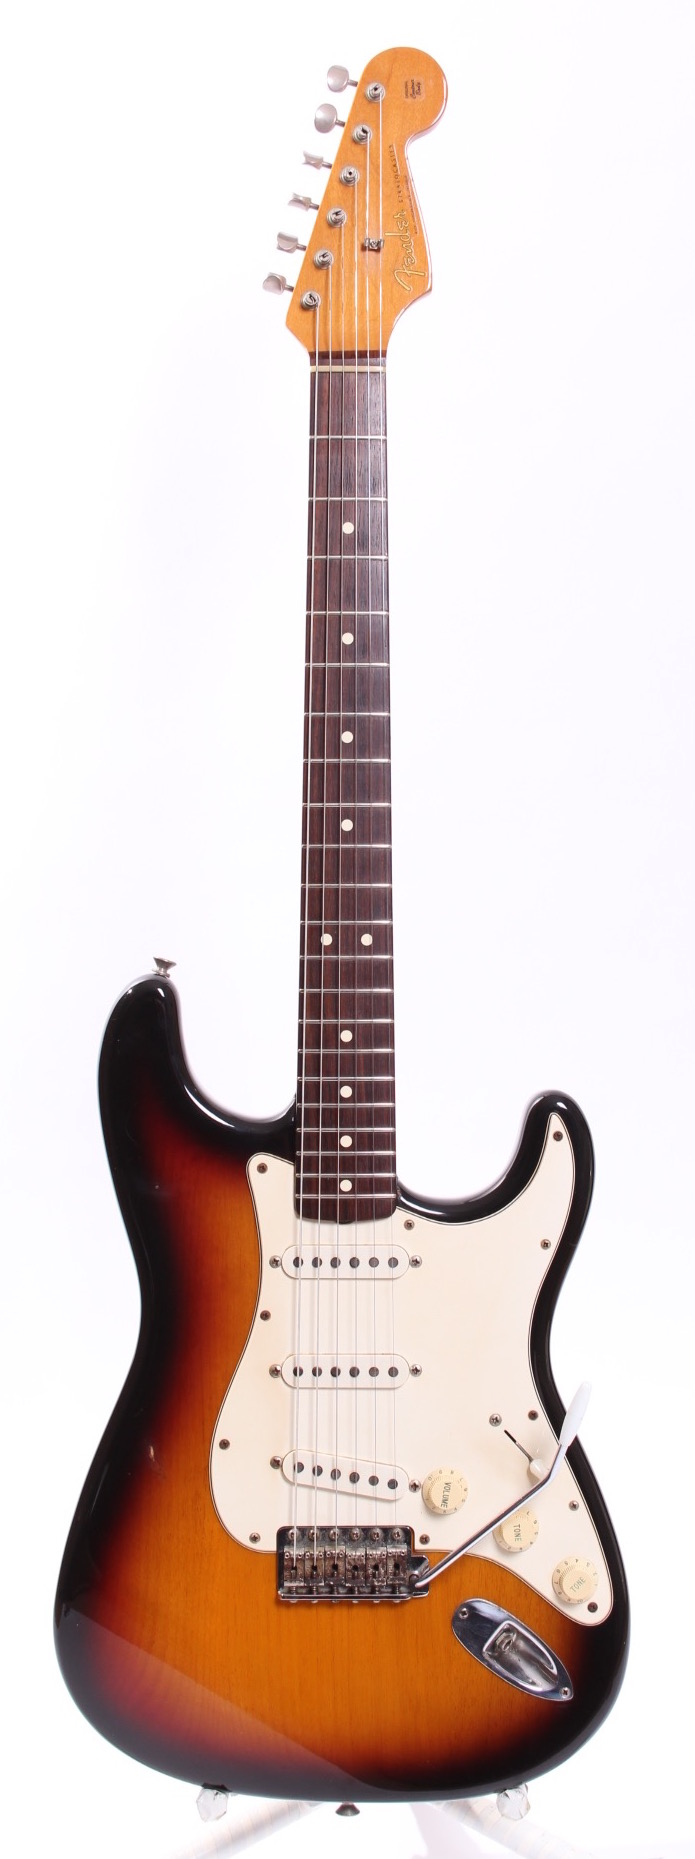 Fender American Vintage '62 Reissue Stratocaster 1996 Sunburst Guitar